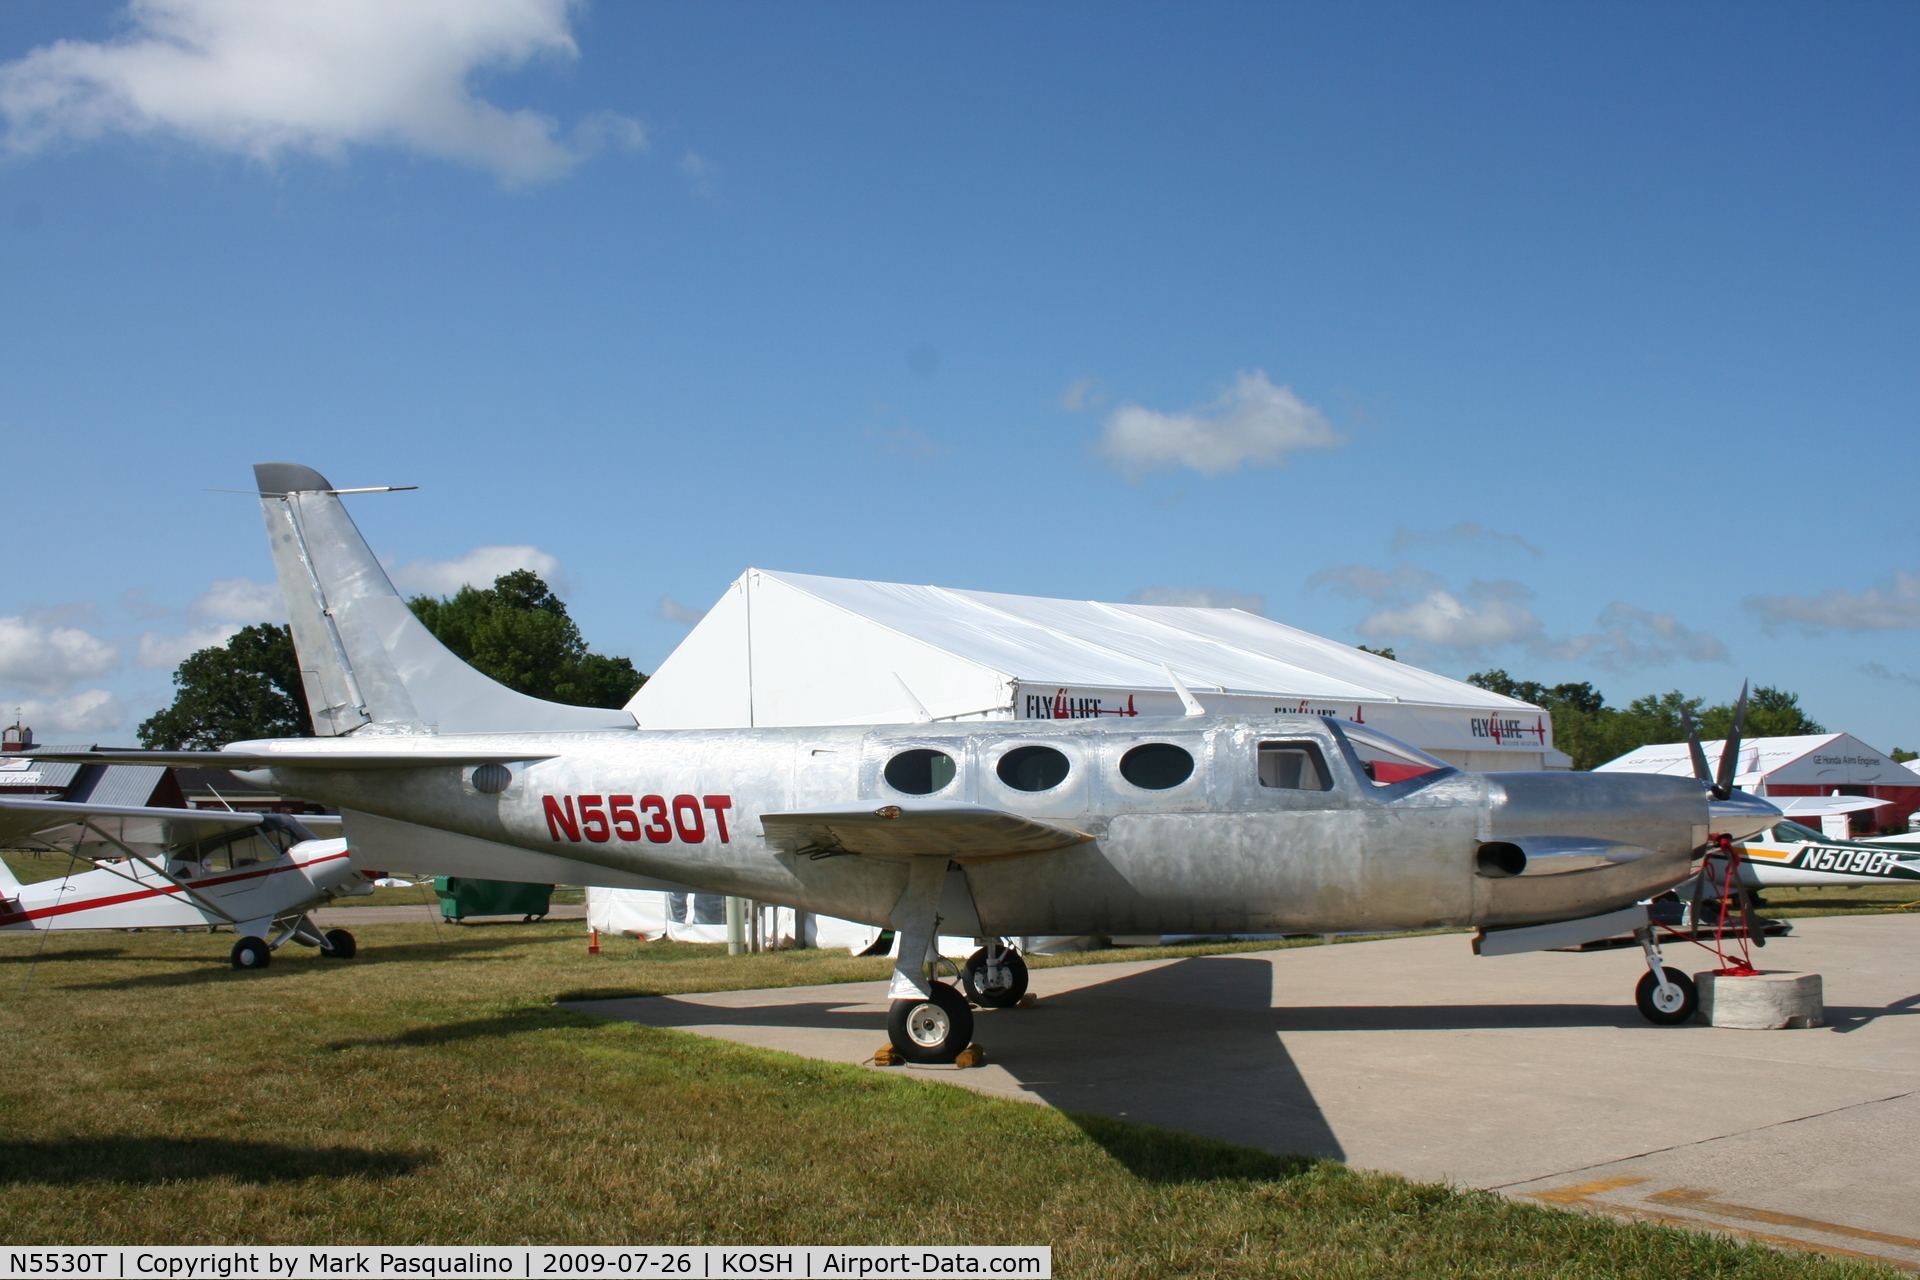 N5530T, Airplane Factory Speedstar 850 C/N 001, Speedstar 850